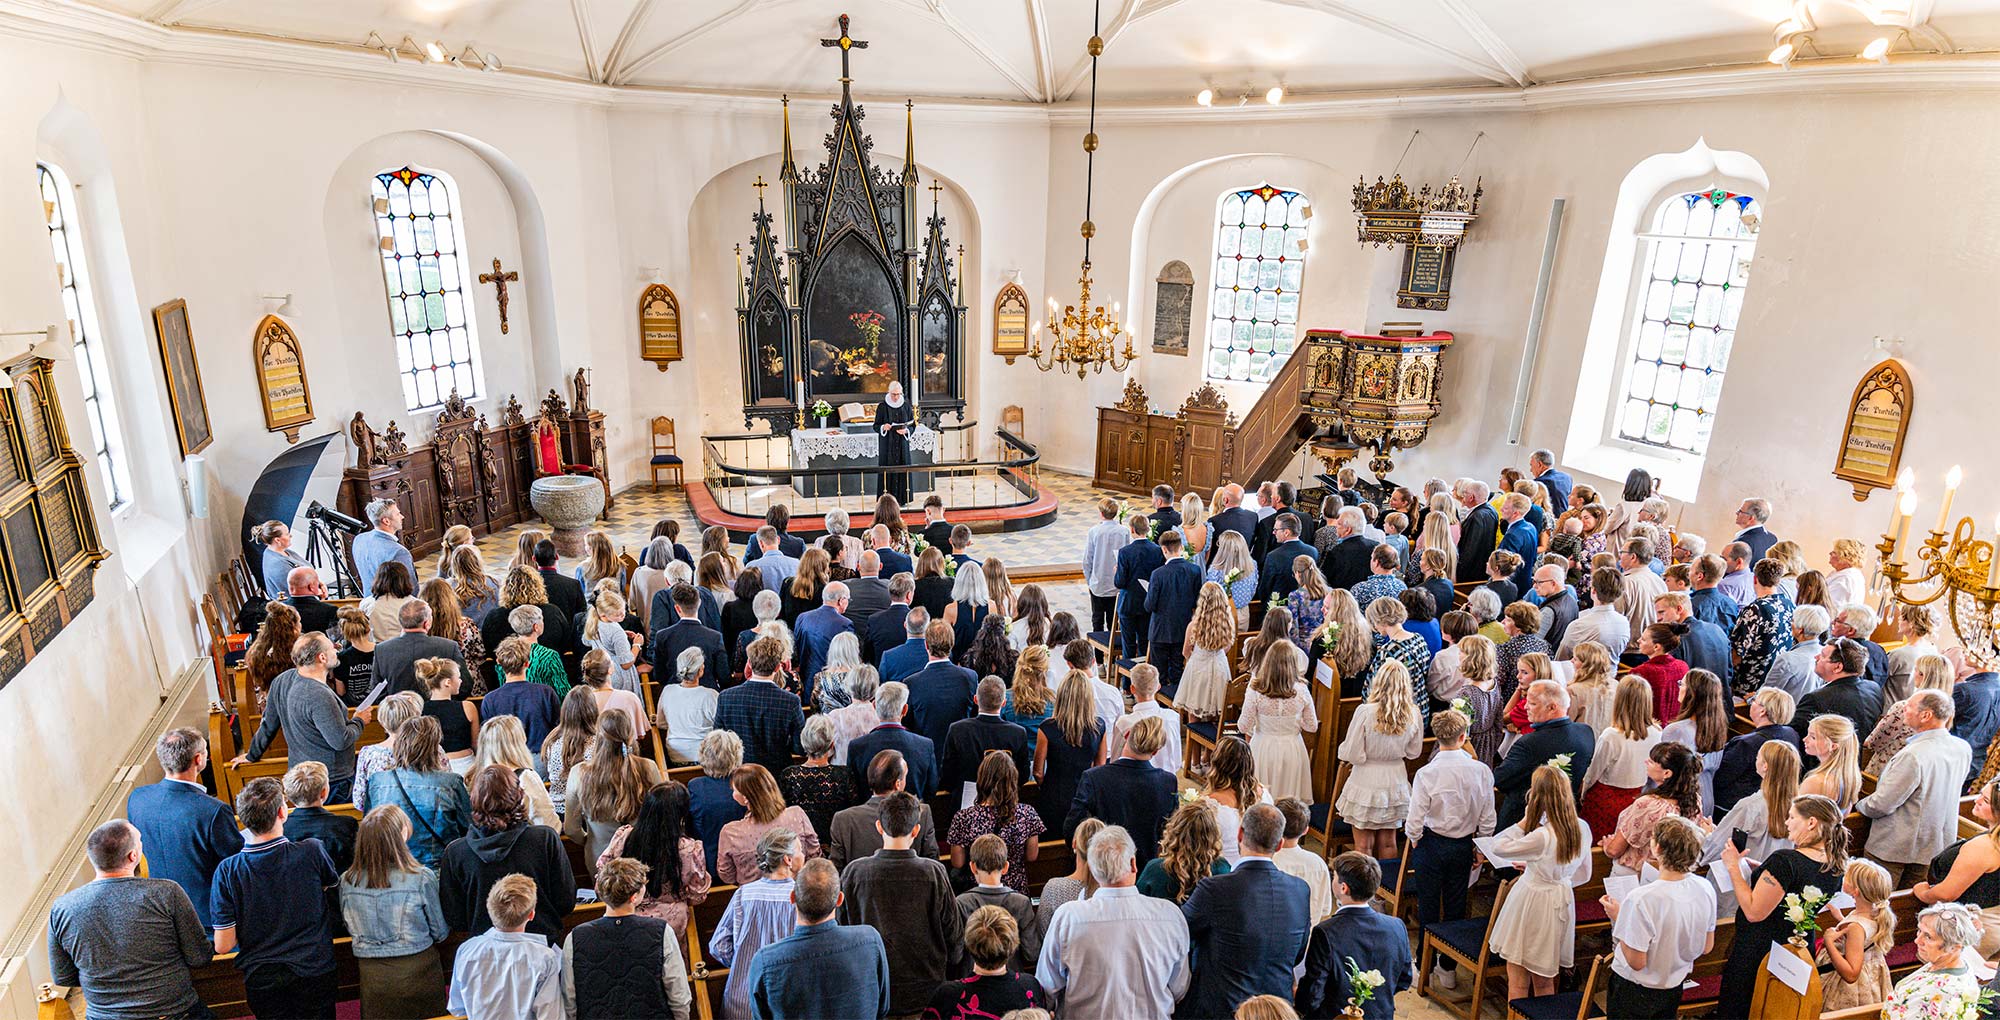 Efter en lang periode med coronarestriktioner er det nu atter muligt at fylde kirken med familie og venner under konfirmationer. Foto: TorbenStender.